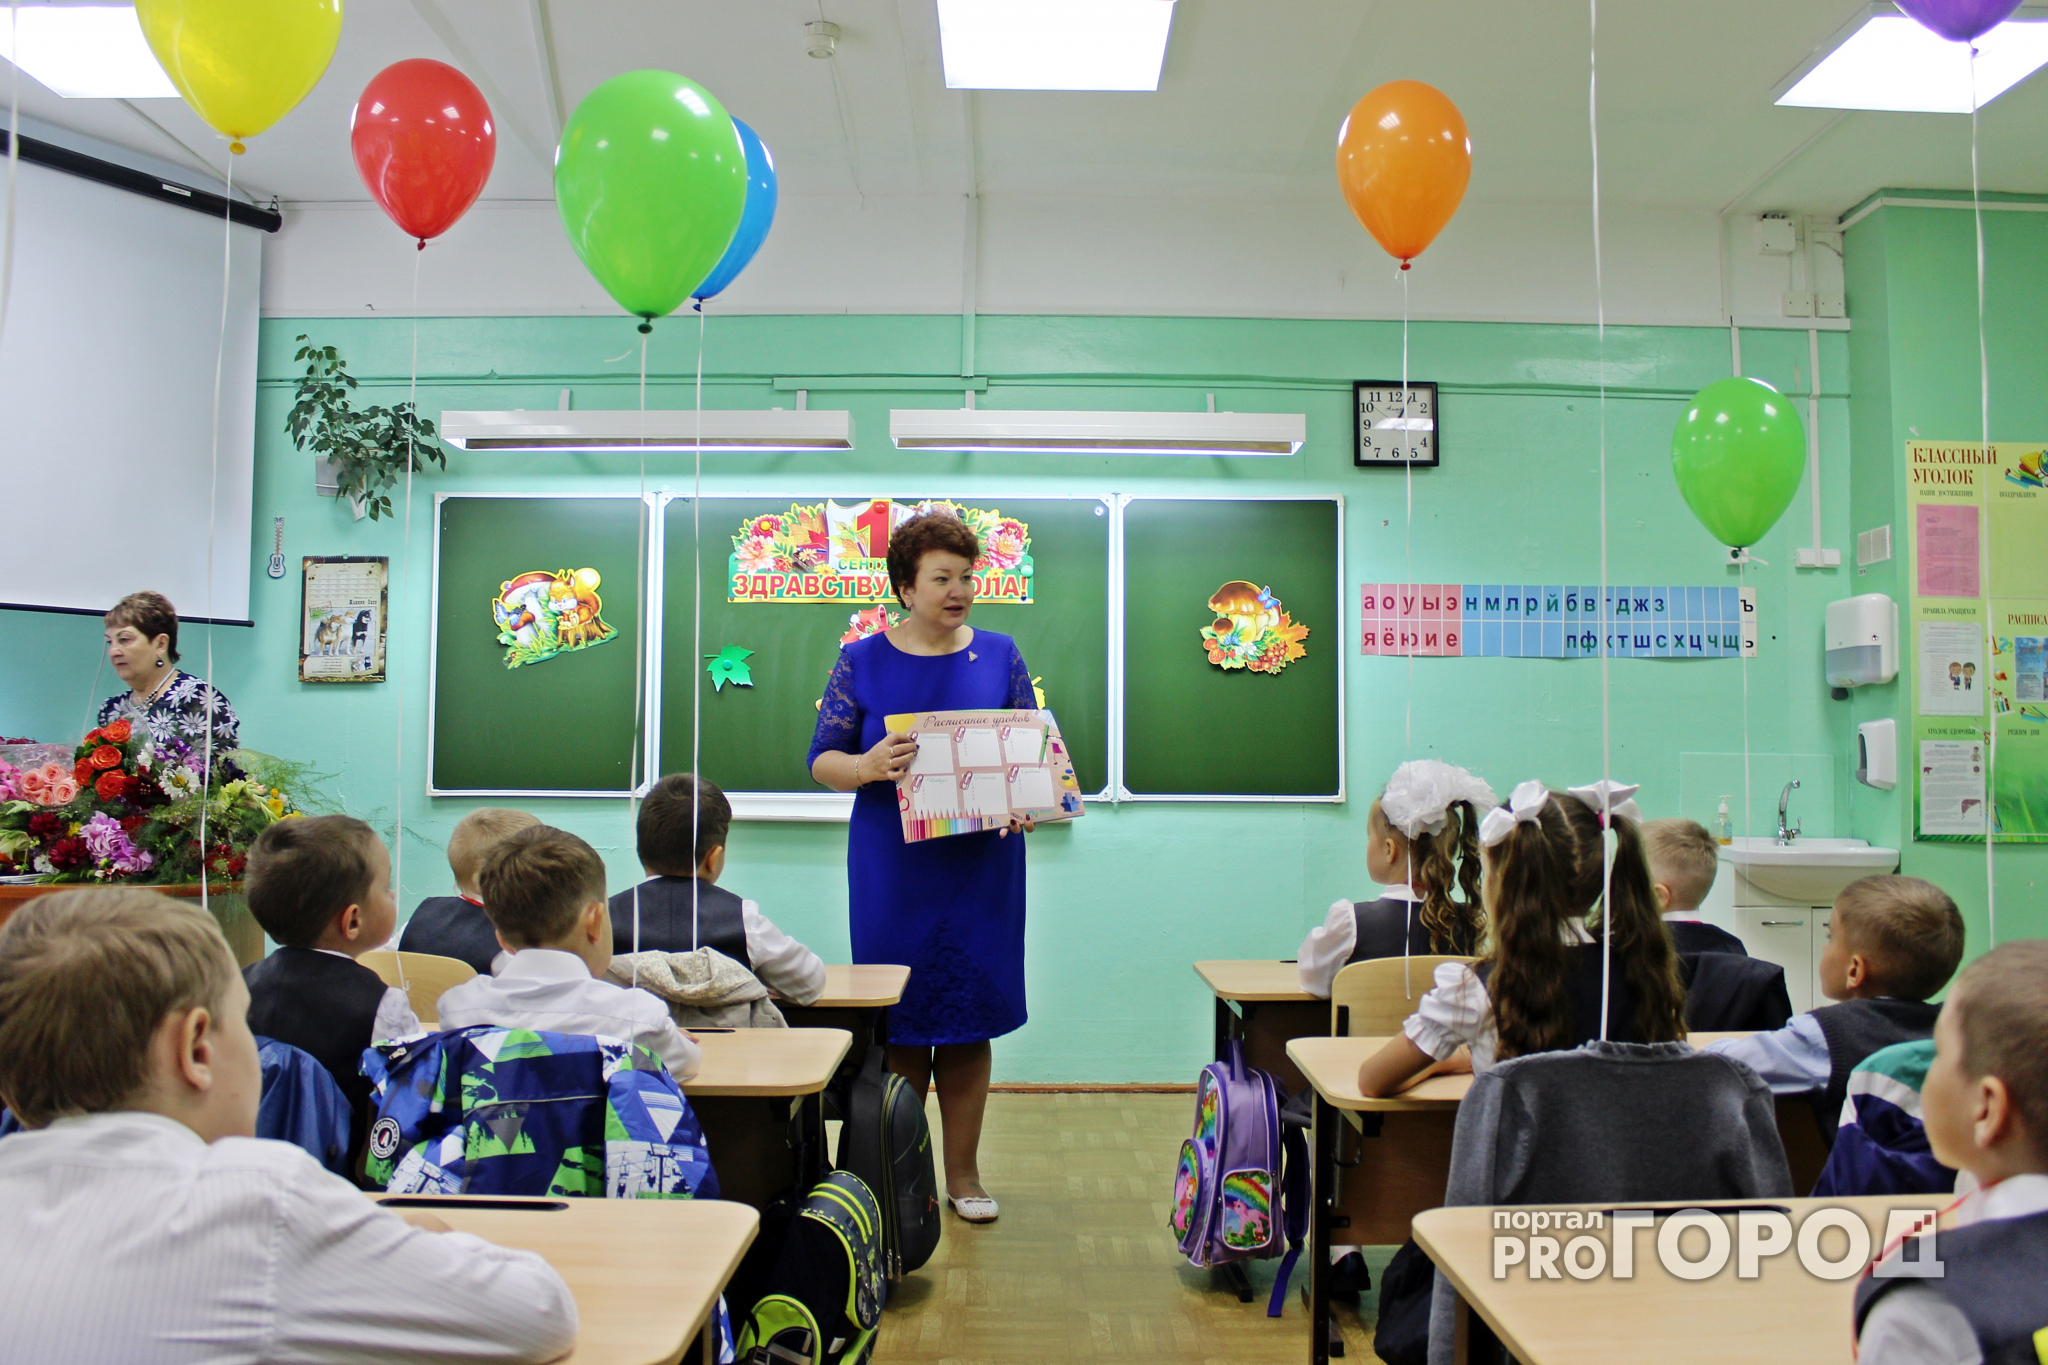 Портал PG11.ru сделал сюрприз для первоклассников сыктывкарской школы (фото)